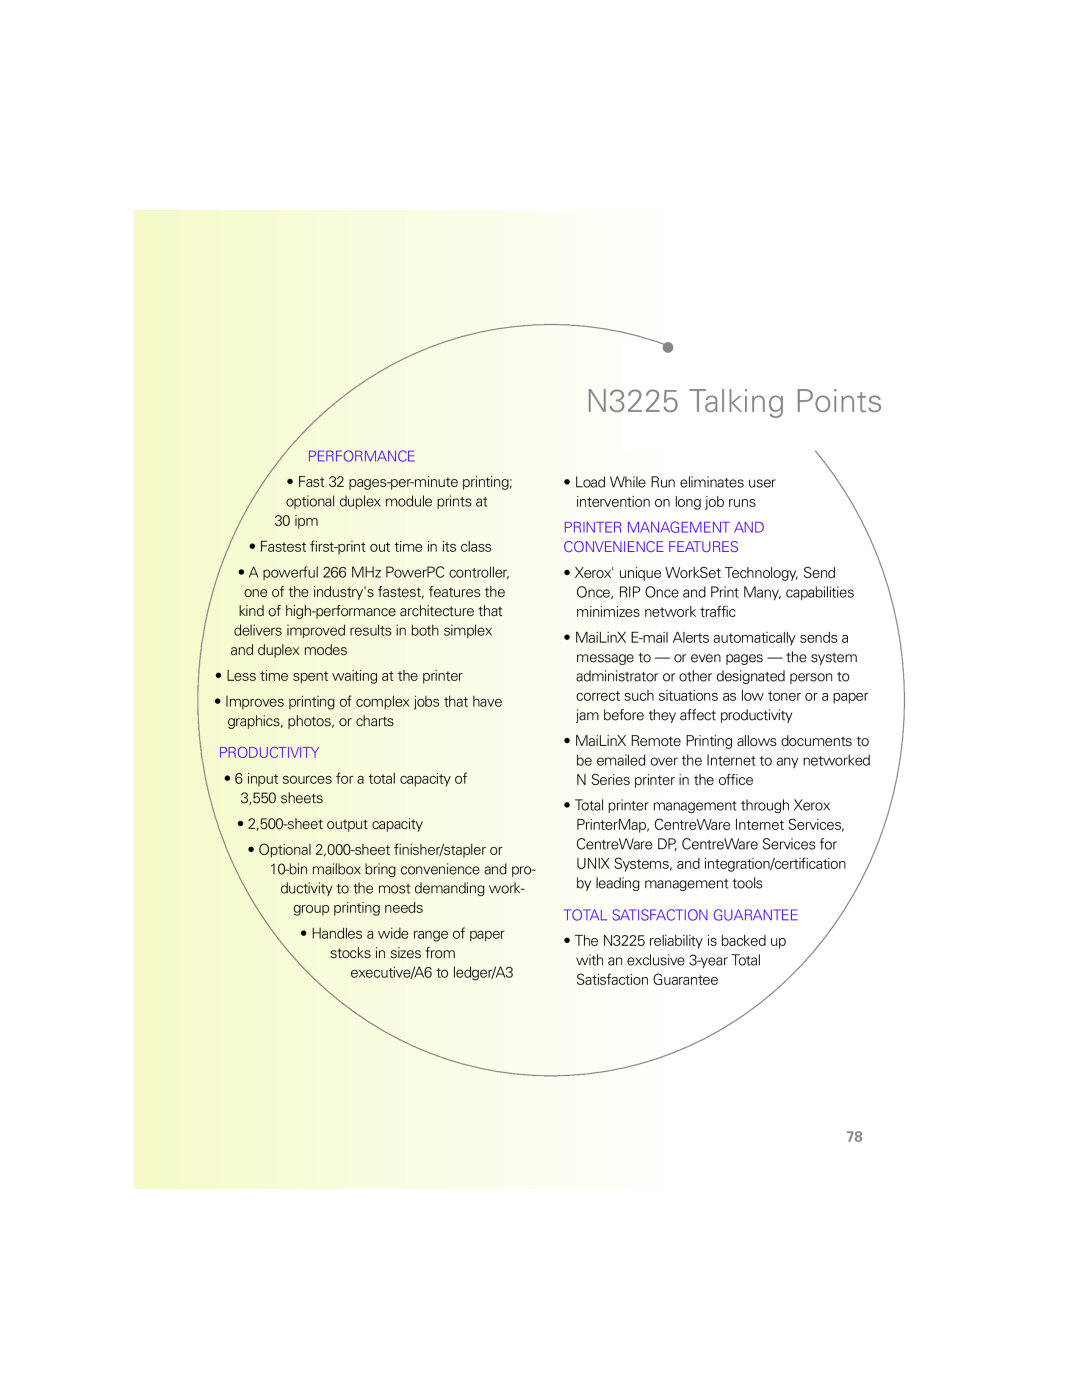 Xerox N Series manual N3225 Talking Points 